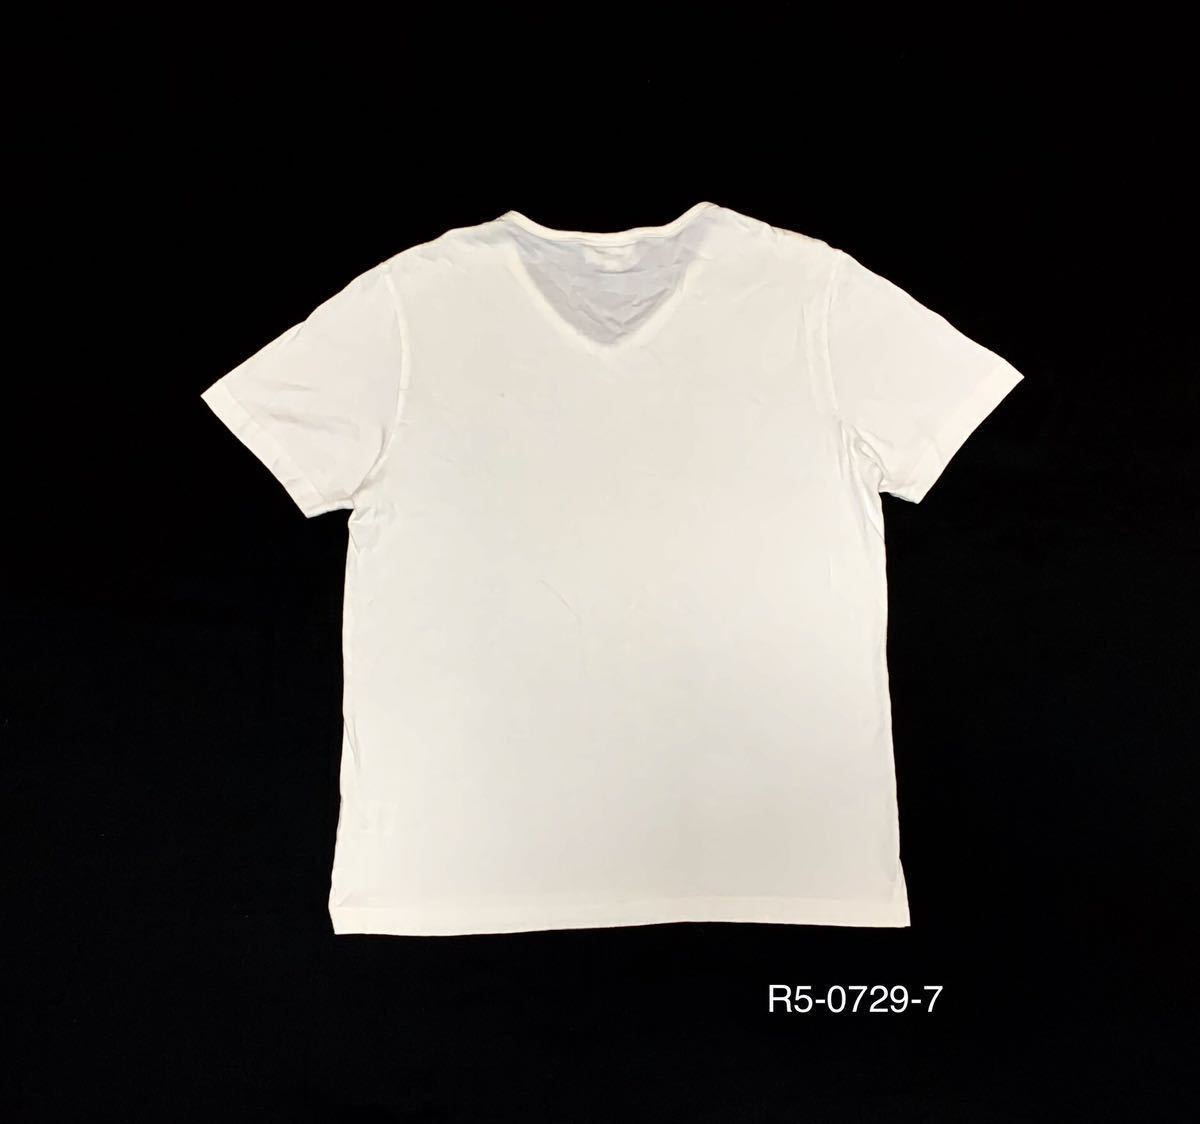 LACOSTE ラコステ // SLIMFIT 半袖 マーク刺繍 Vネック Tシャツ・カットソー (白) サイズ US (M)_画像2